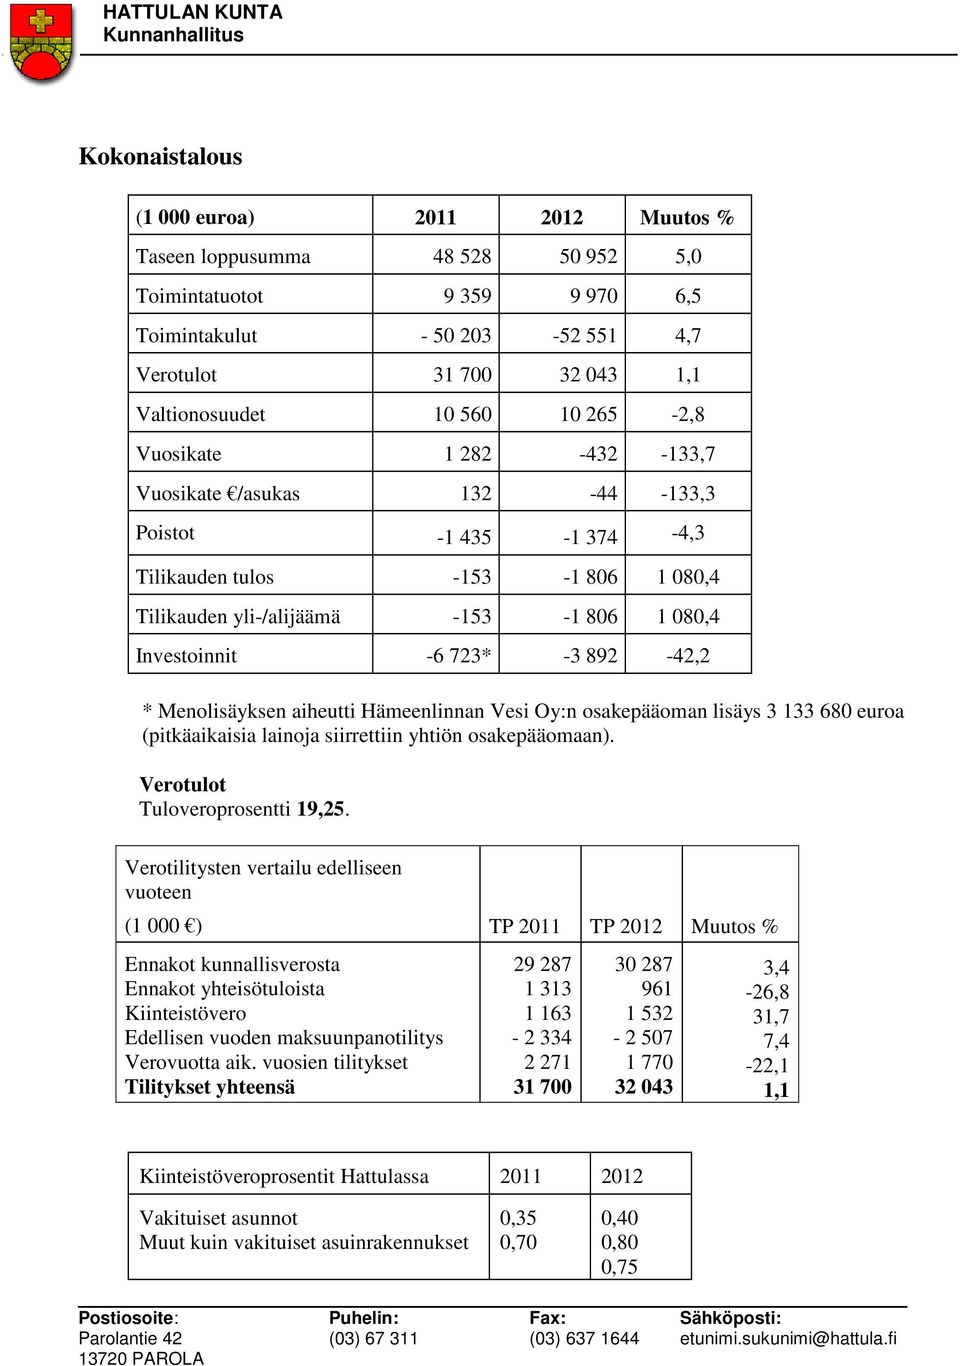 892-42,2 * Menolisäyksen aiheutti Hämeenlinnan Vesi Oy:n osakepääoman lisäys 3 133 680 euroa (pitkäaikaisia lainoja siirrettiin yhtiön osakepääomaan). Verotulot Tuloveroprosentti 19,25.